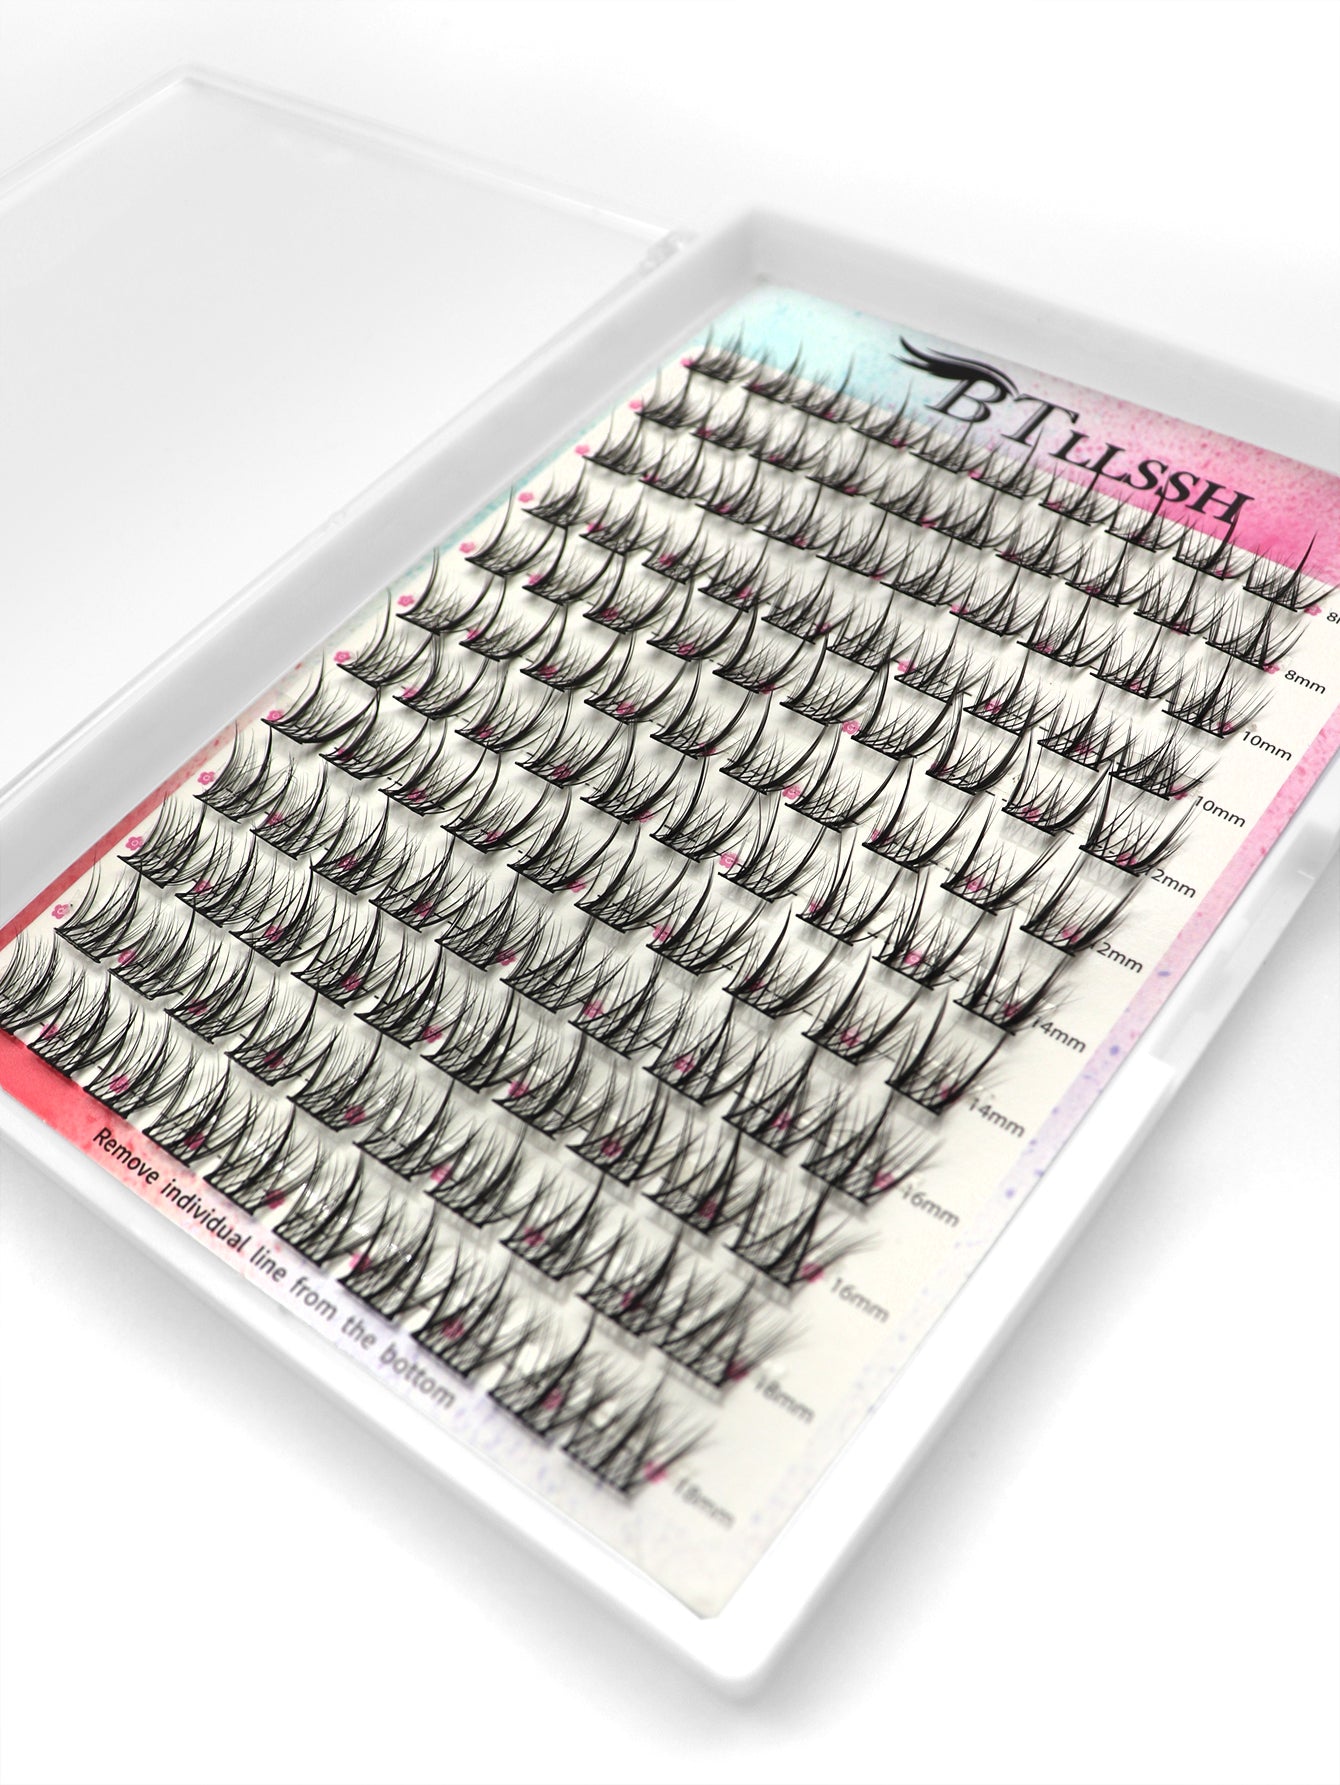 1 set DIY self Grafting False Eyelashes, Including 120 clusters Individual False Eyelashes.